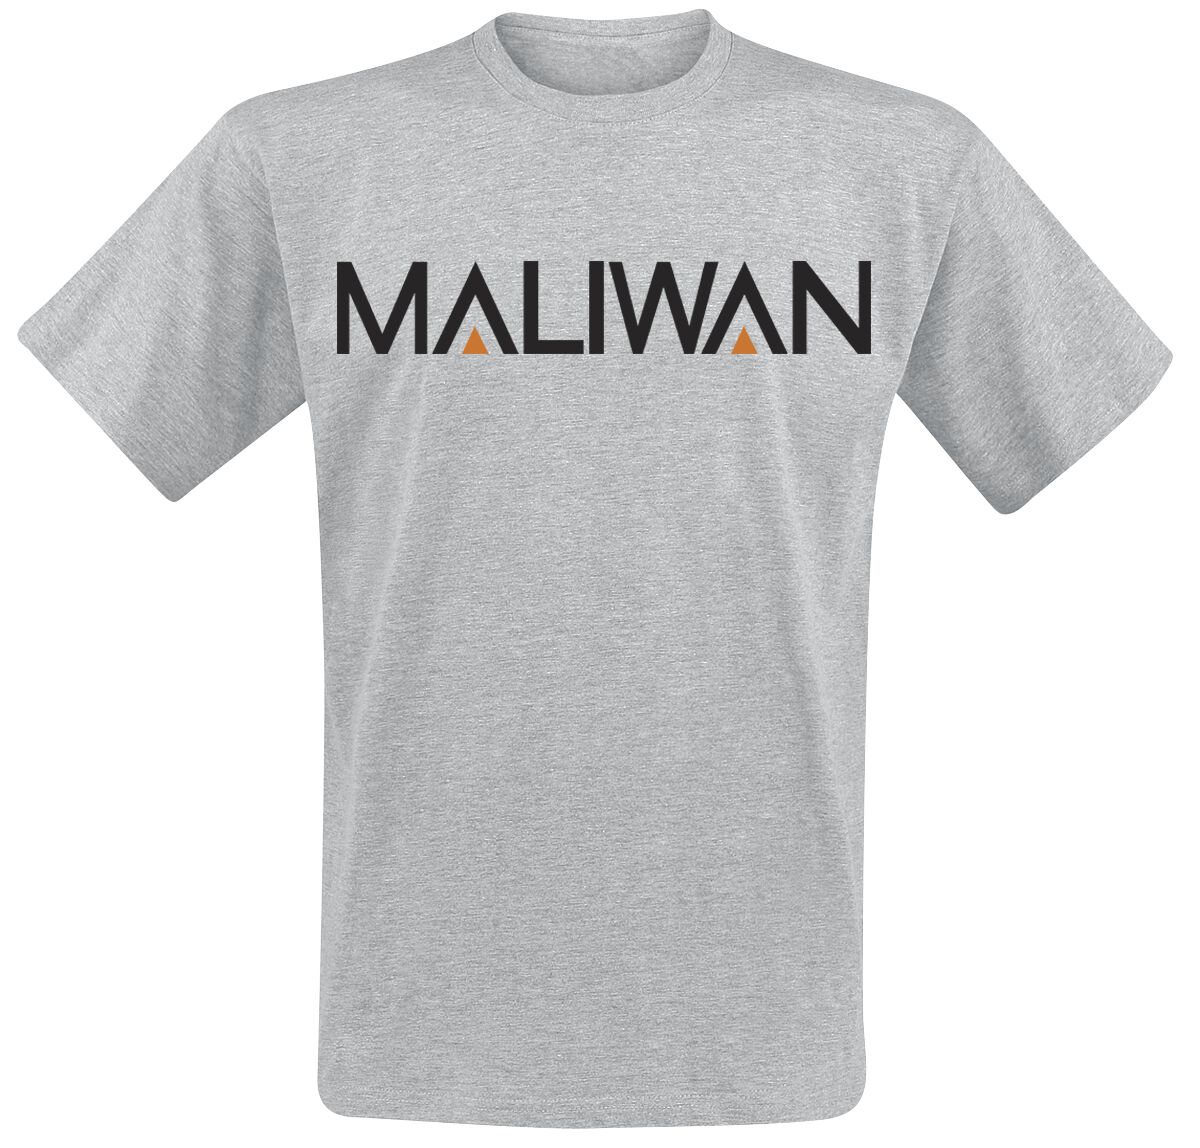 Borderlands - Gaming T-Shirt - 3 - Maliwan - S bis XXL - für Männer - Größe L - grau meliert  - EMP exklusives Merchandise!